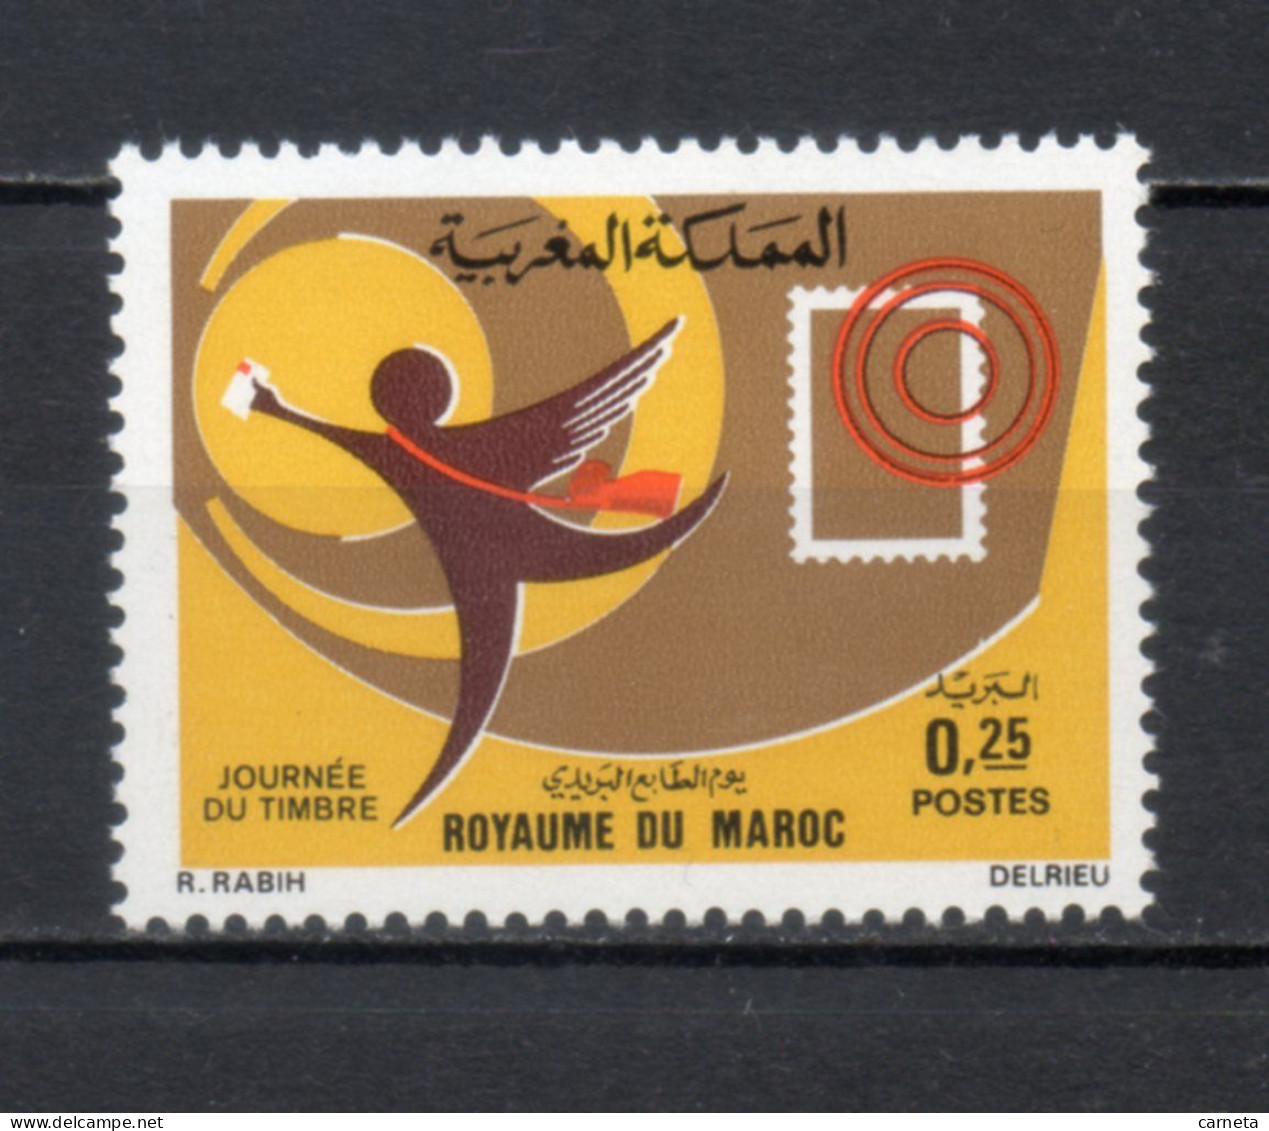 MAROC N°  653   NEUF SANS CHARNIERE  COTE  0.50€   JOURNEE DU TIMRE - Marruecos (1956-...)